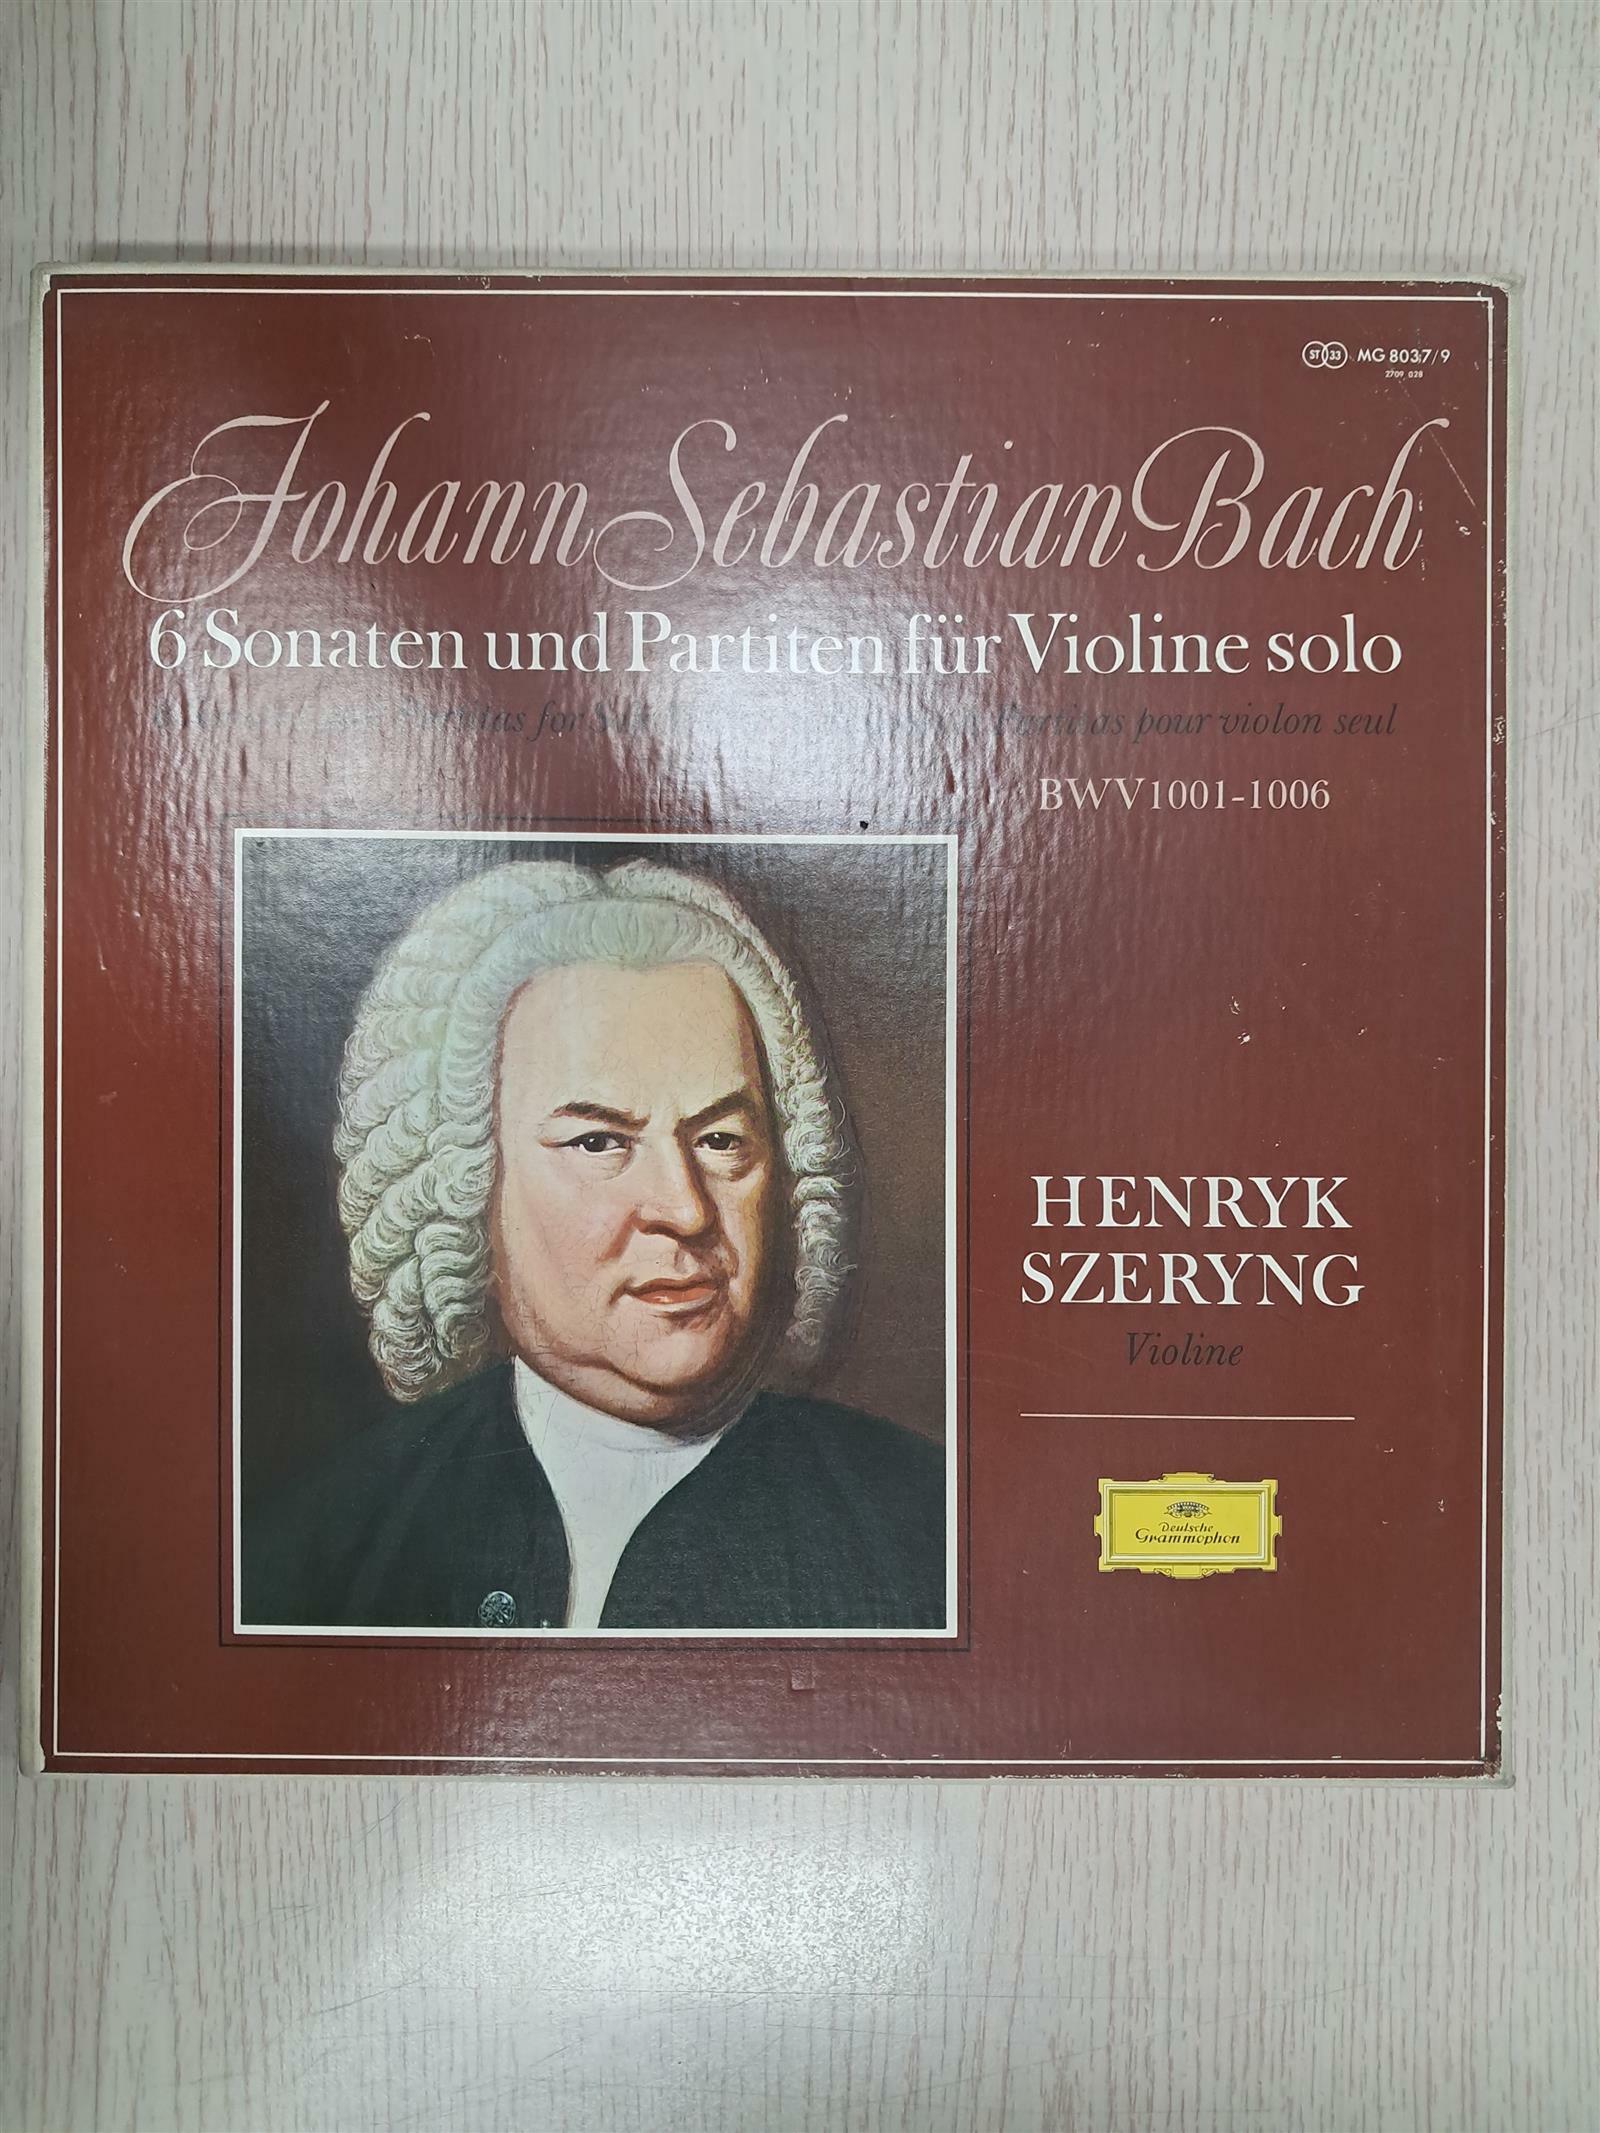 [중고] [수입][LP] 바흐(Bach) 무반주 바이올린 소나타와 파르티타 [3LP]